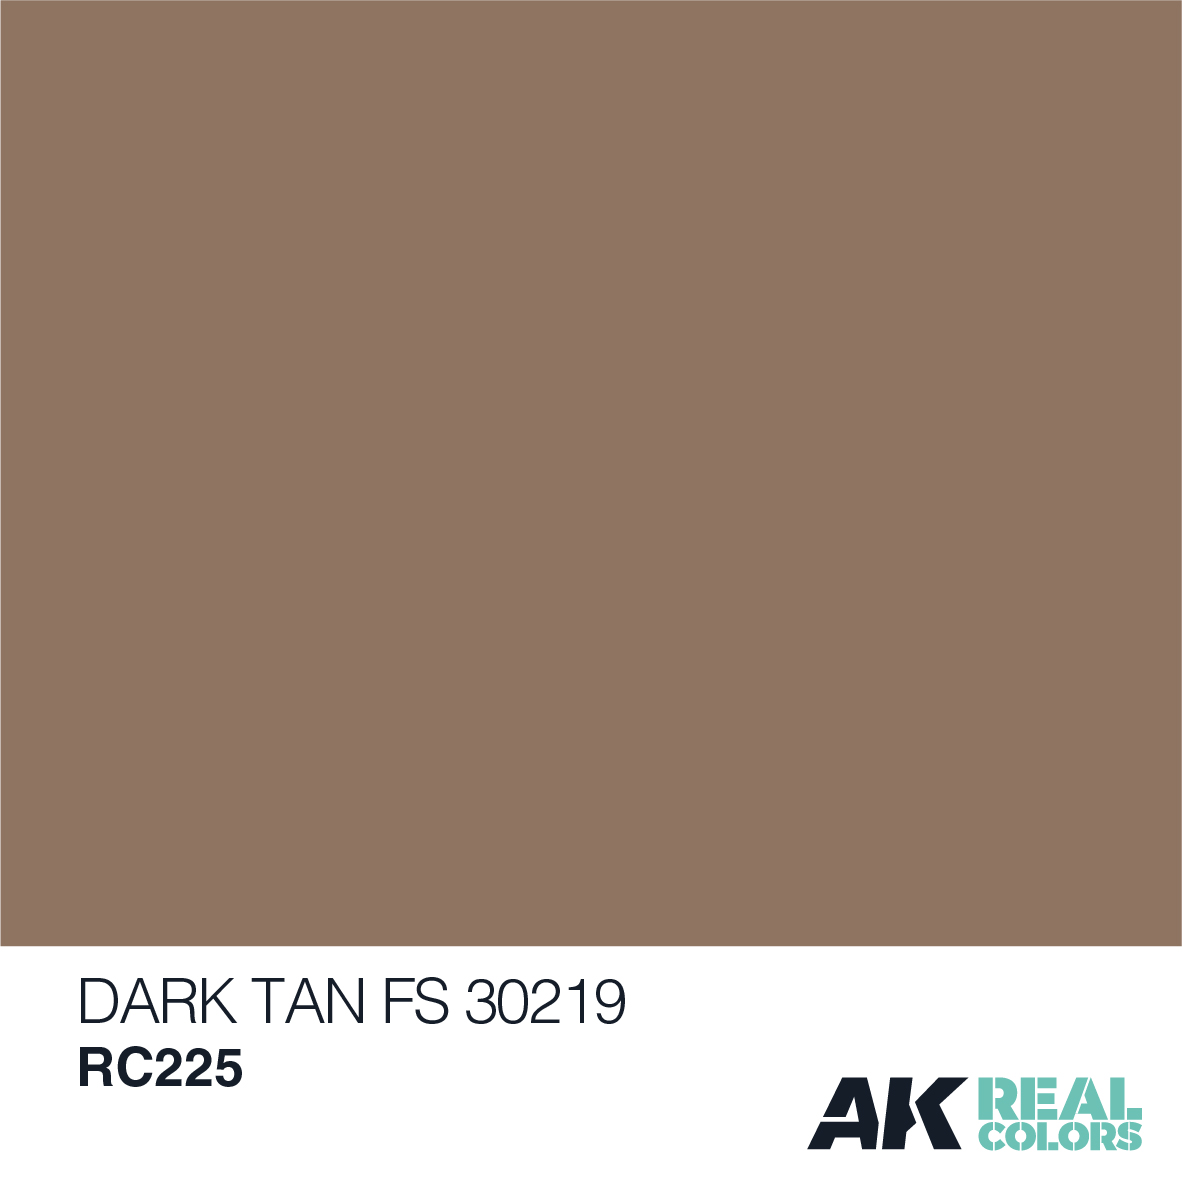 Dark Tan FS 30219